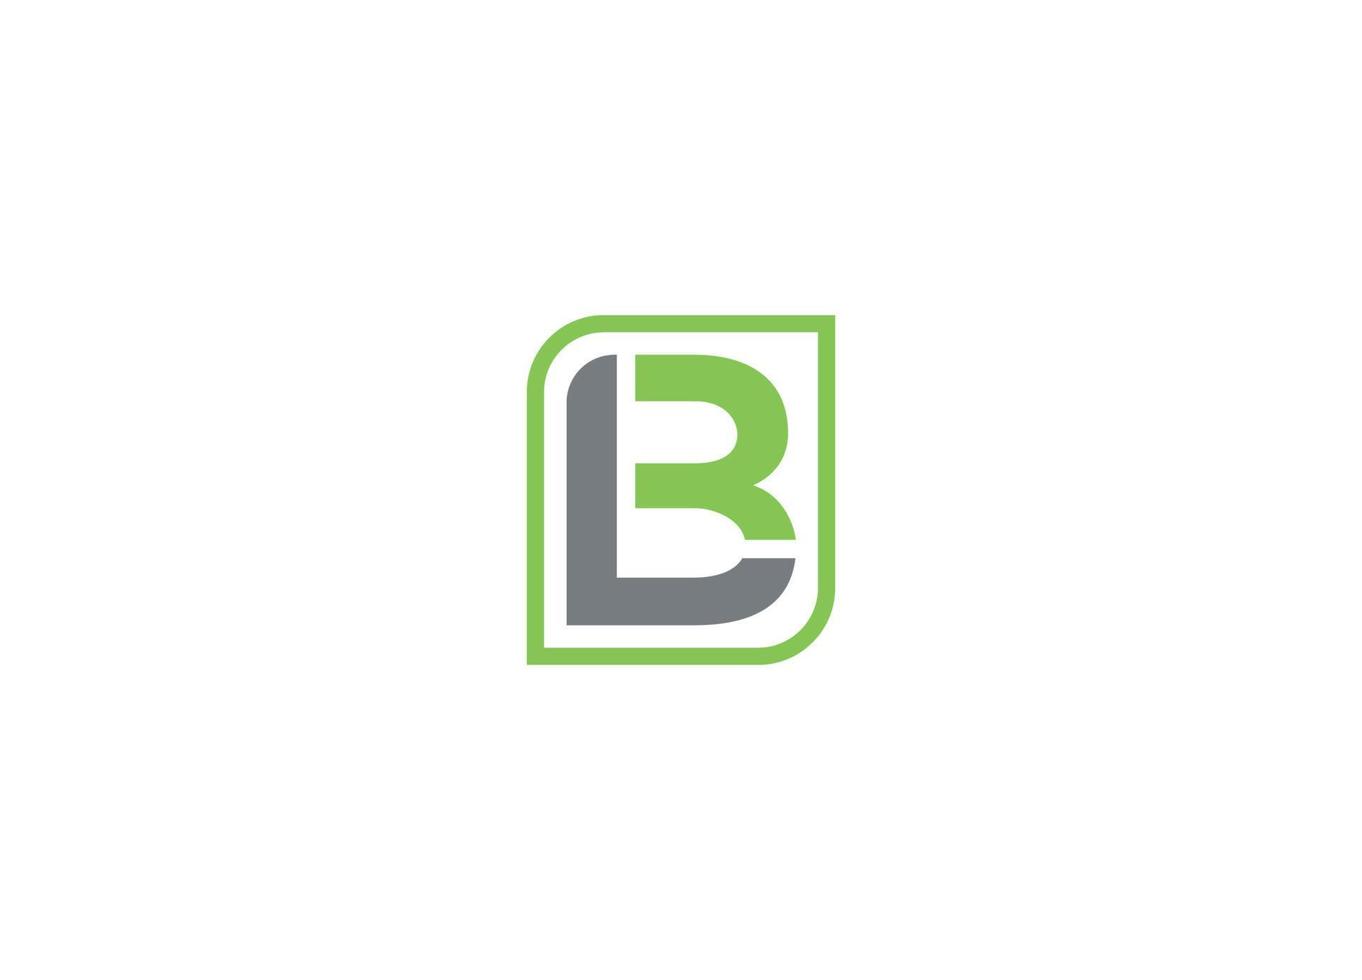 LB initial modern logo design vector icon template